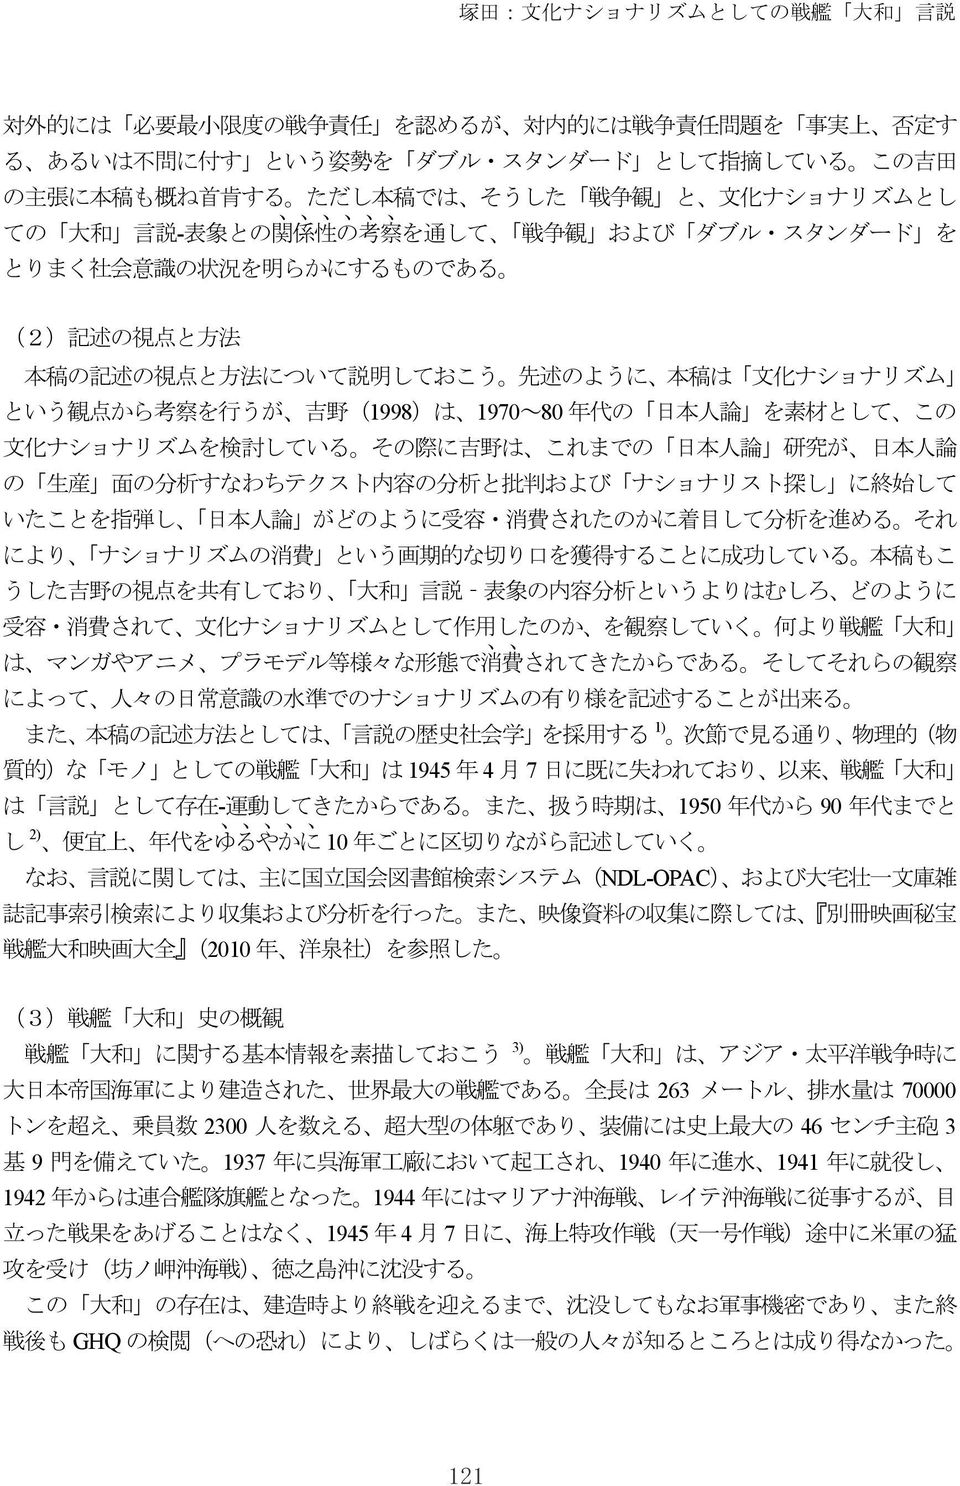 化 ナショナリズム という 観 点 から 考 察 を 行 うが 吉 野 (1998)は 1970~80 年 代 の 日 本 人 論 を 素 材 として この 文 化 ナショナリズムを 検 討 している その 際 に 吉 野 は これまでの 日 本 人 論 研 究 が 日 本 人 論 の 生 産 面 の 分 析 すなわちテクスト 内 容 の 分 析 と 批 判 および ナショナリスト 探 し に